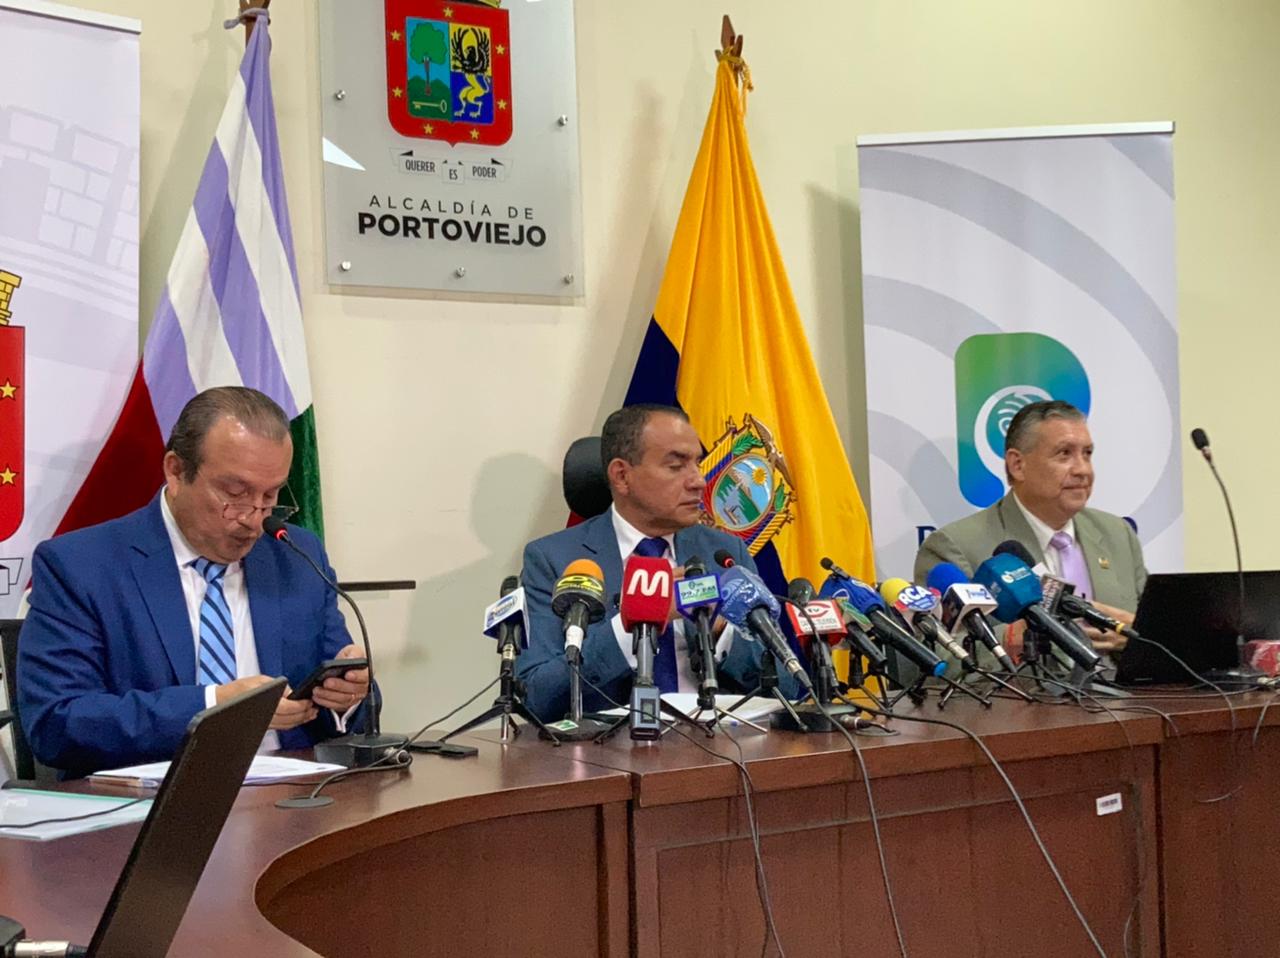 En rueda de prensa el alcalde de Portoviejo, Javier Pincay, aseguró que sigue al frente de la administración del municipio y que no ha sido destituido.